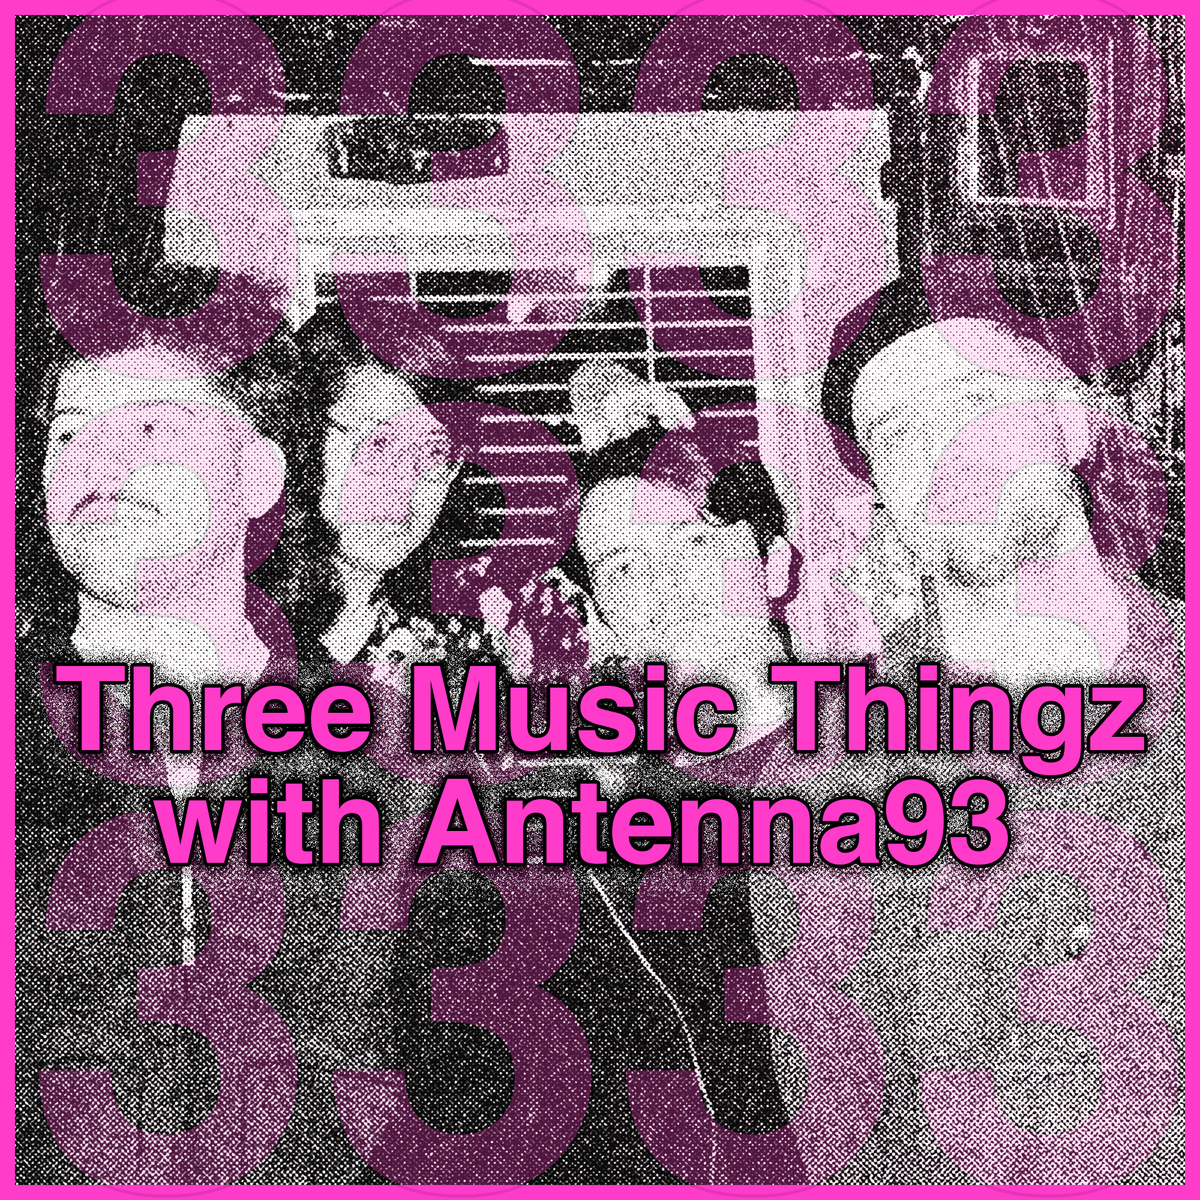 Three Music Thingz with Antenna93